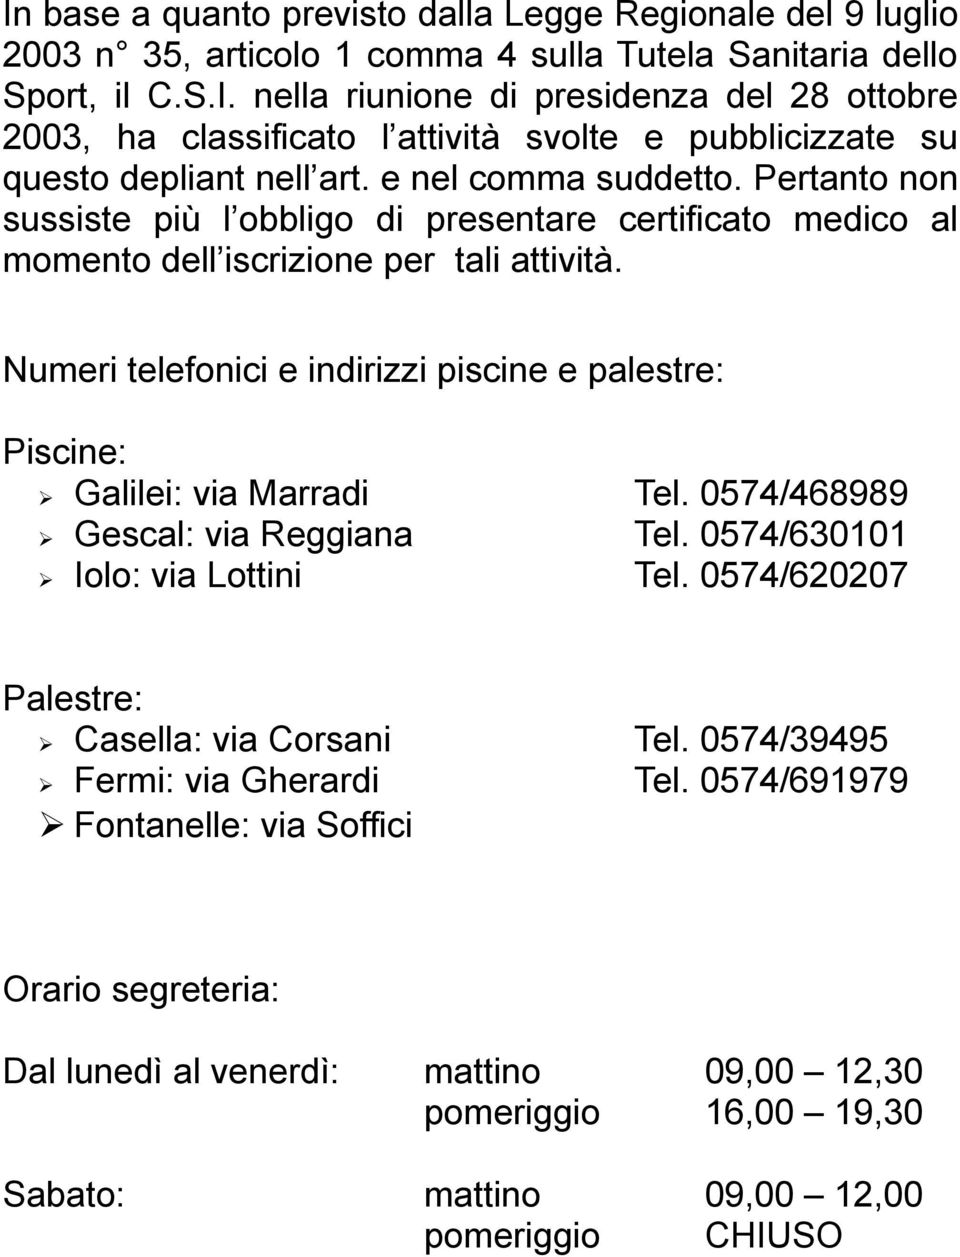 Numeri telefonici e indirizzi piscine e palestre: Piscine: Galilei: via Marradi Tel. 0574/468989 Gescal: via Reggiana Tel. 0574/630101 Iolo: via Lottini Tel.